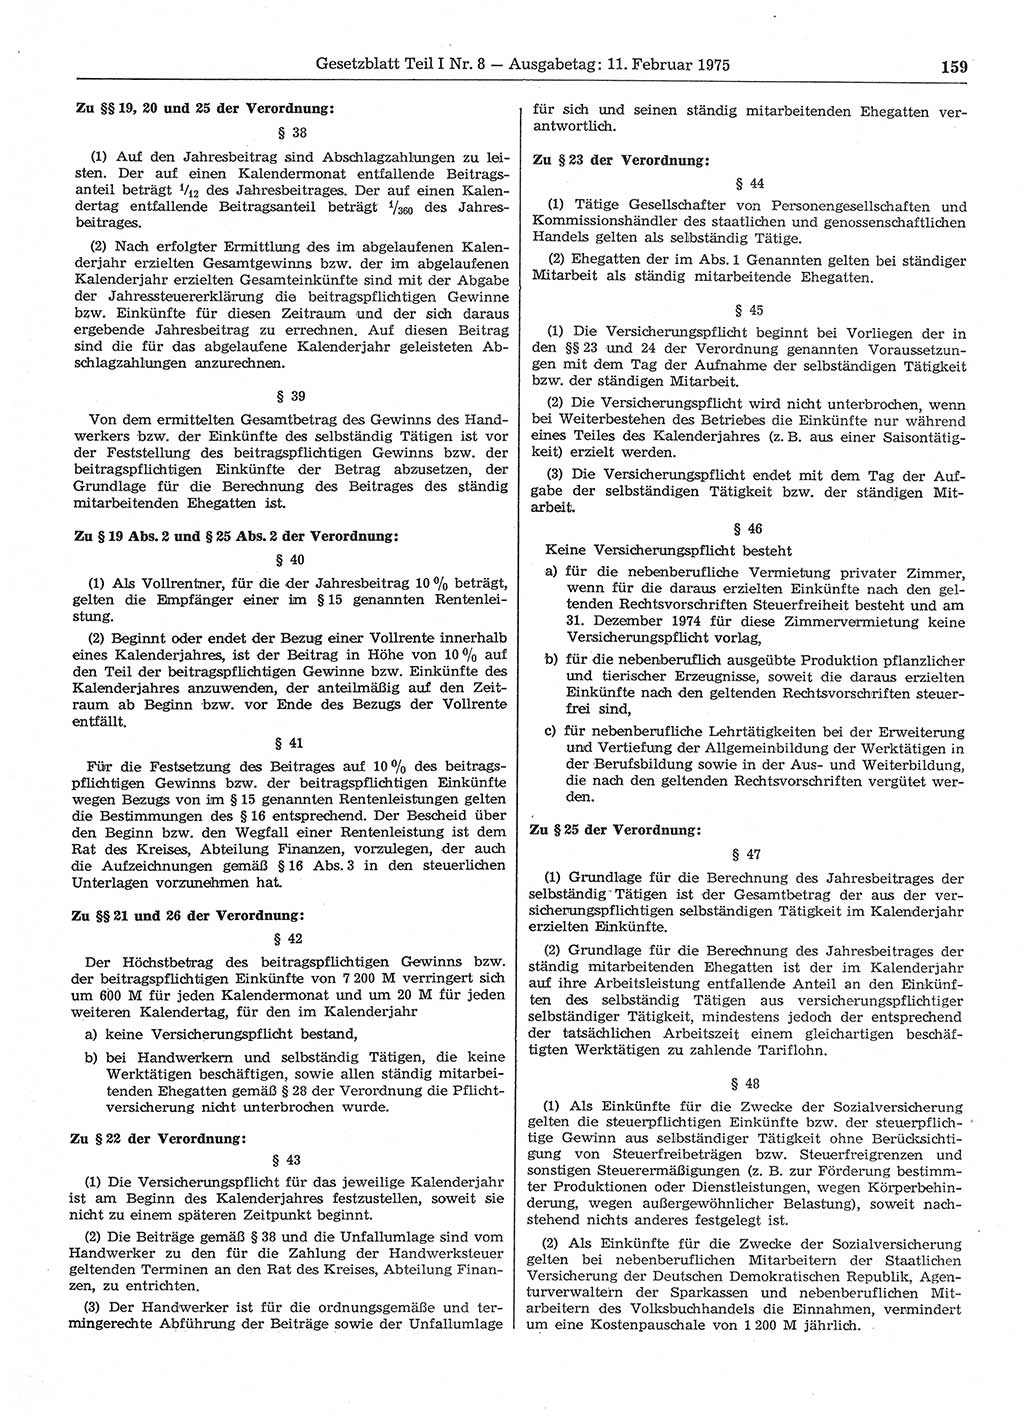 Gesetzblatt (GBl.) der Deutschen Demokratischen Republik (DDR) Teil Ⅰ 1975, Seite 159 (GBl. DDR Ⅰ 1975, S. 159)